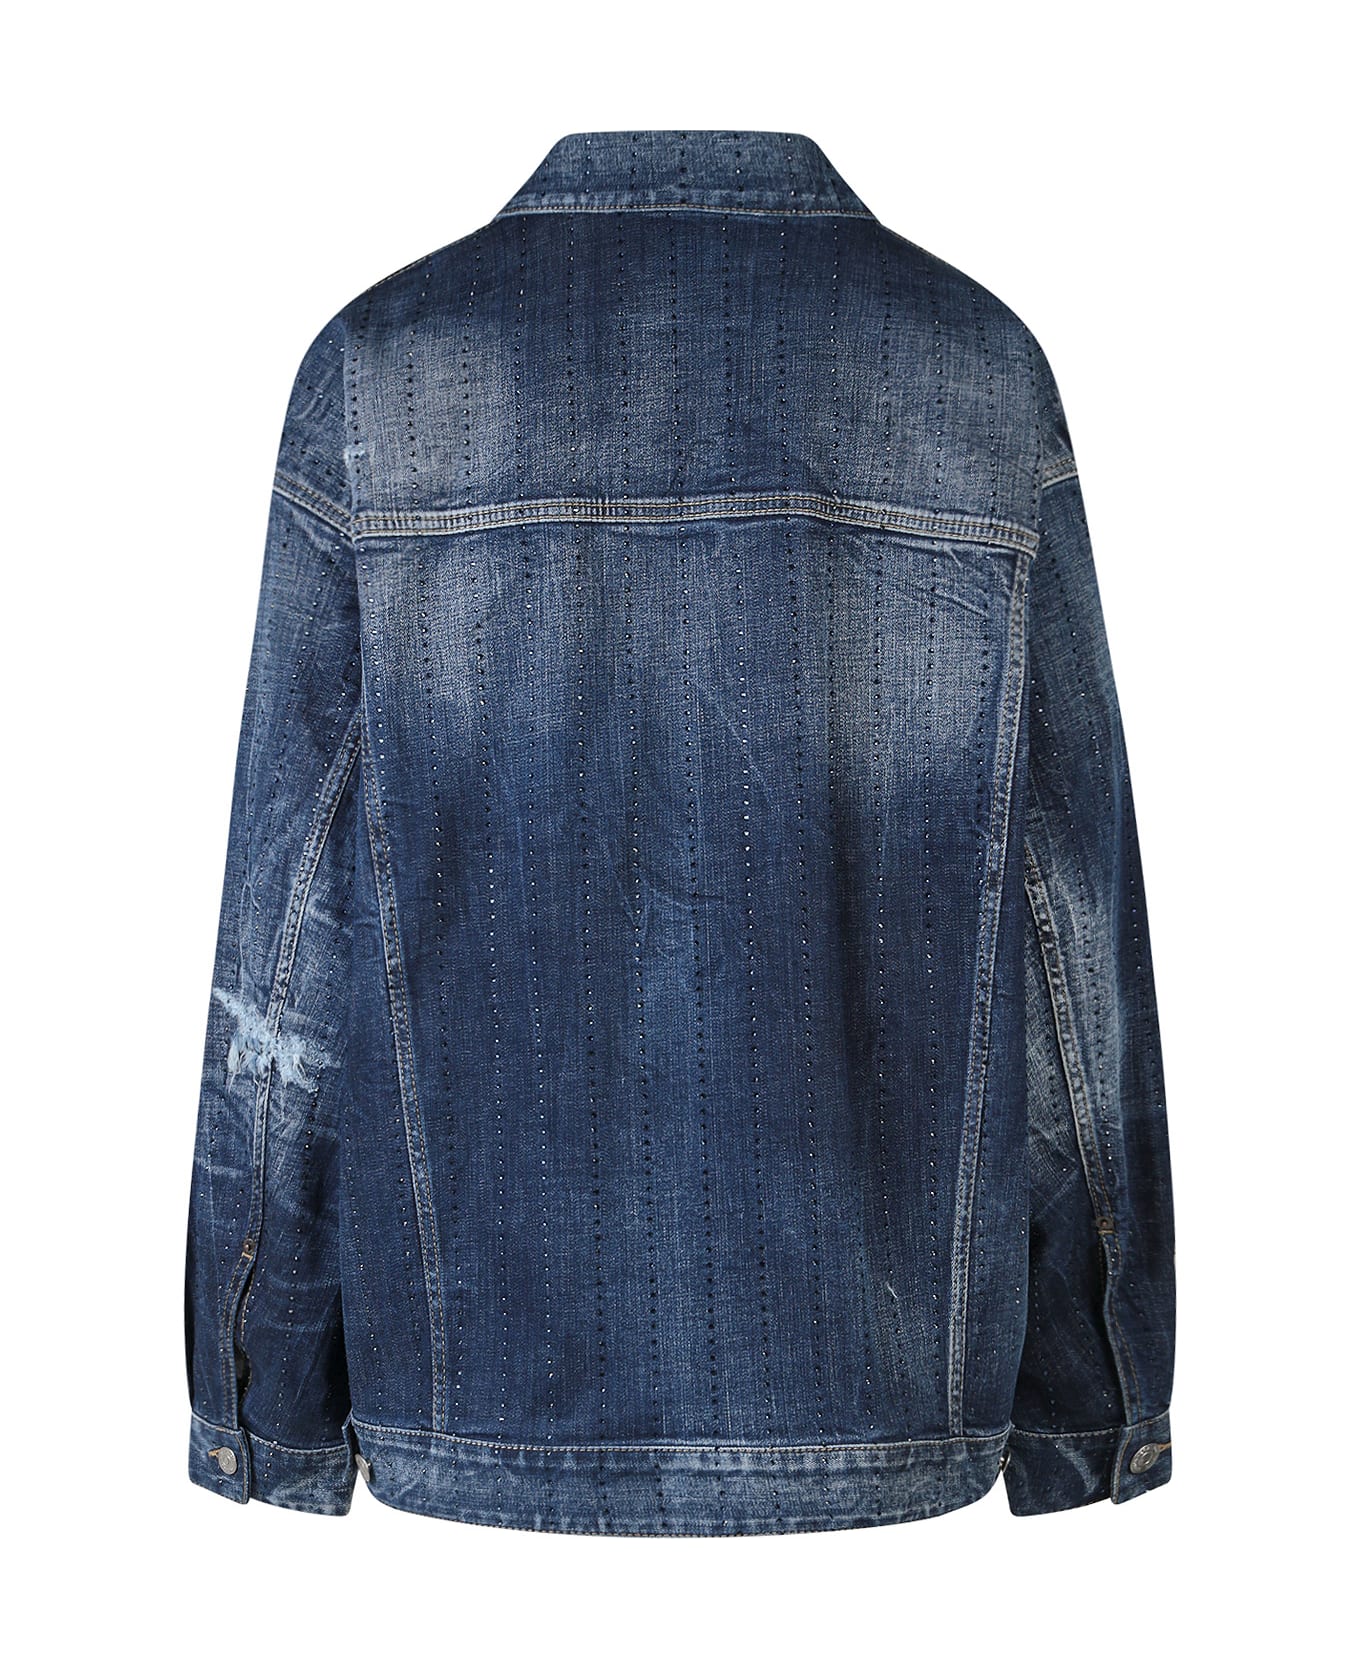 Dsquared2 Denim Jacket With Rhinestone Embellishment - Blue ジャケット